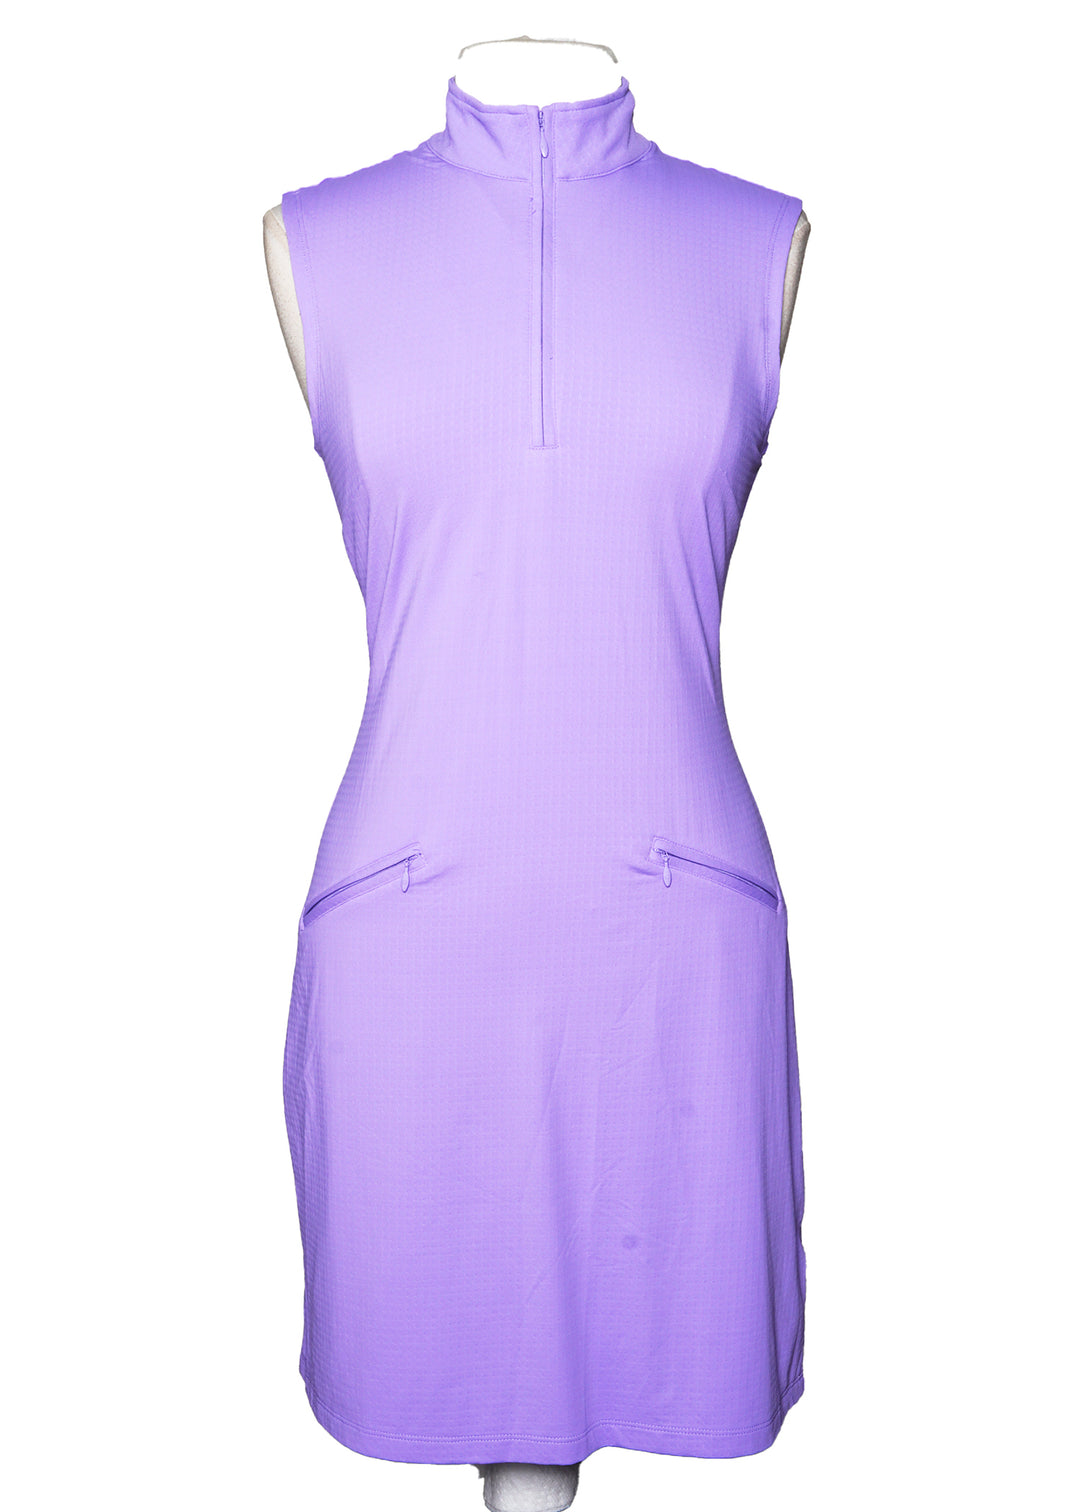 IBKUL SL Mock Neck Dress - Lavender - Skorzie